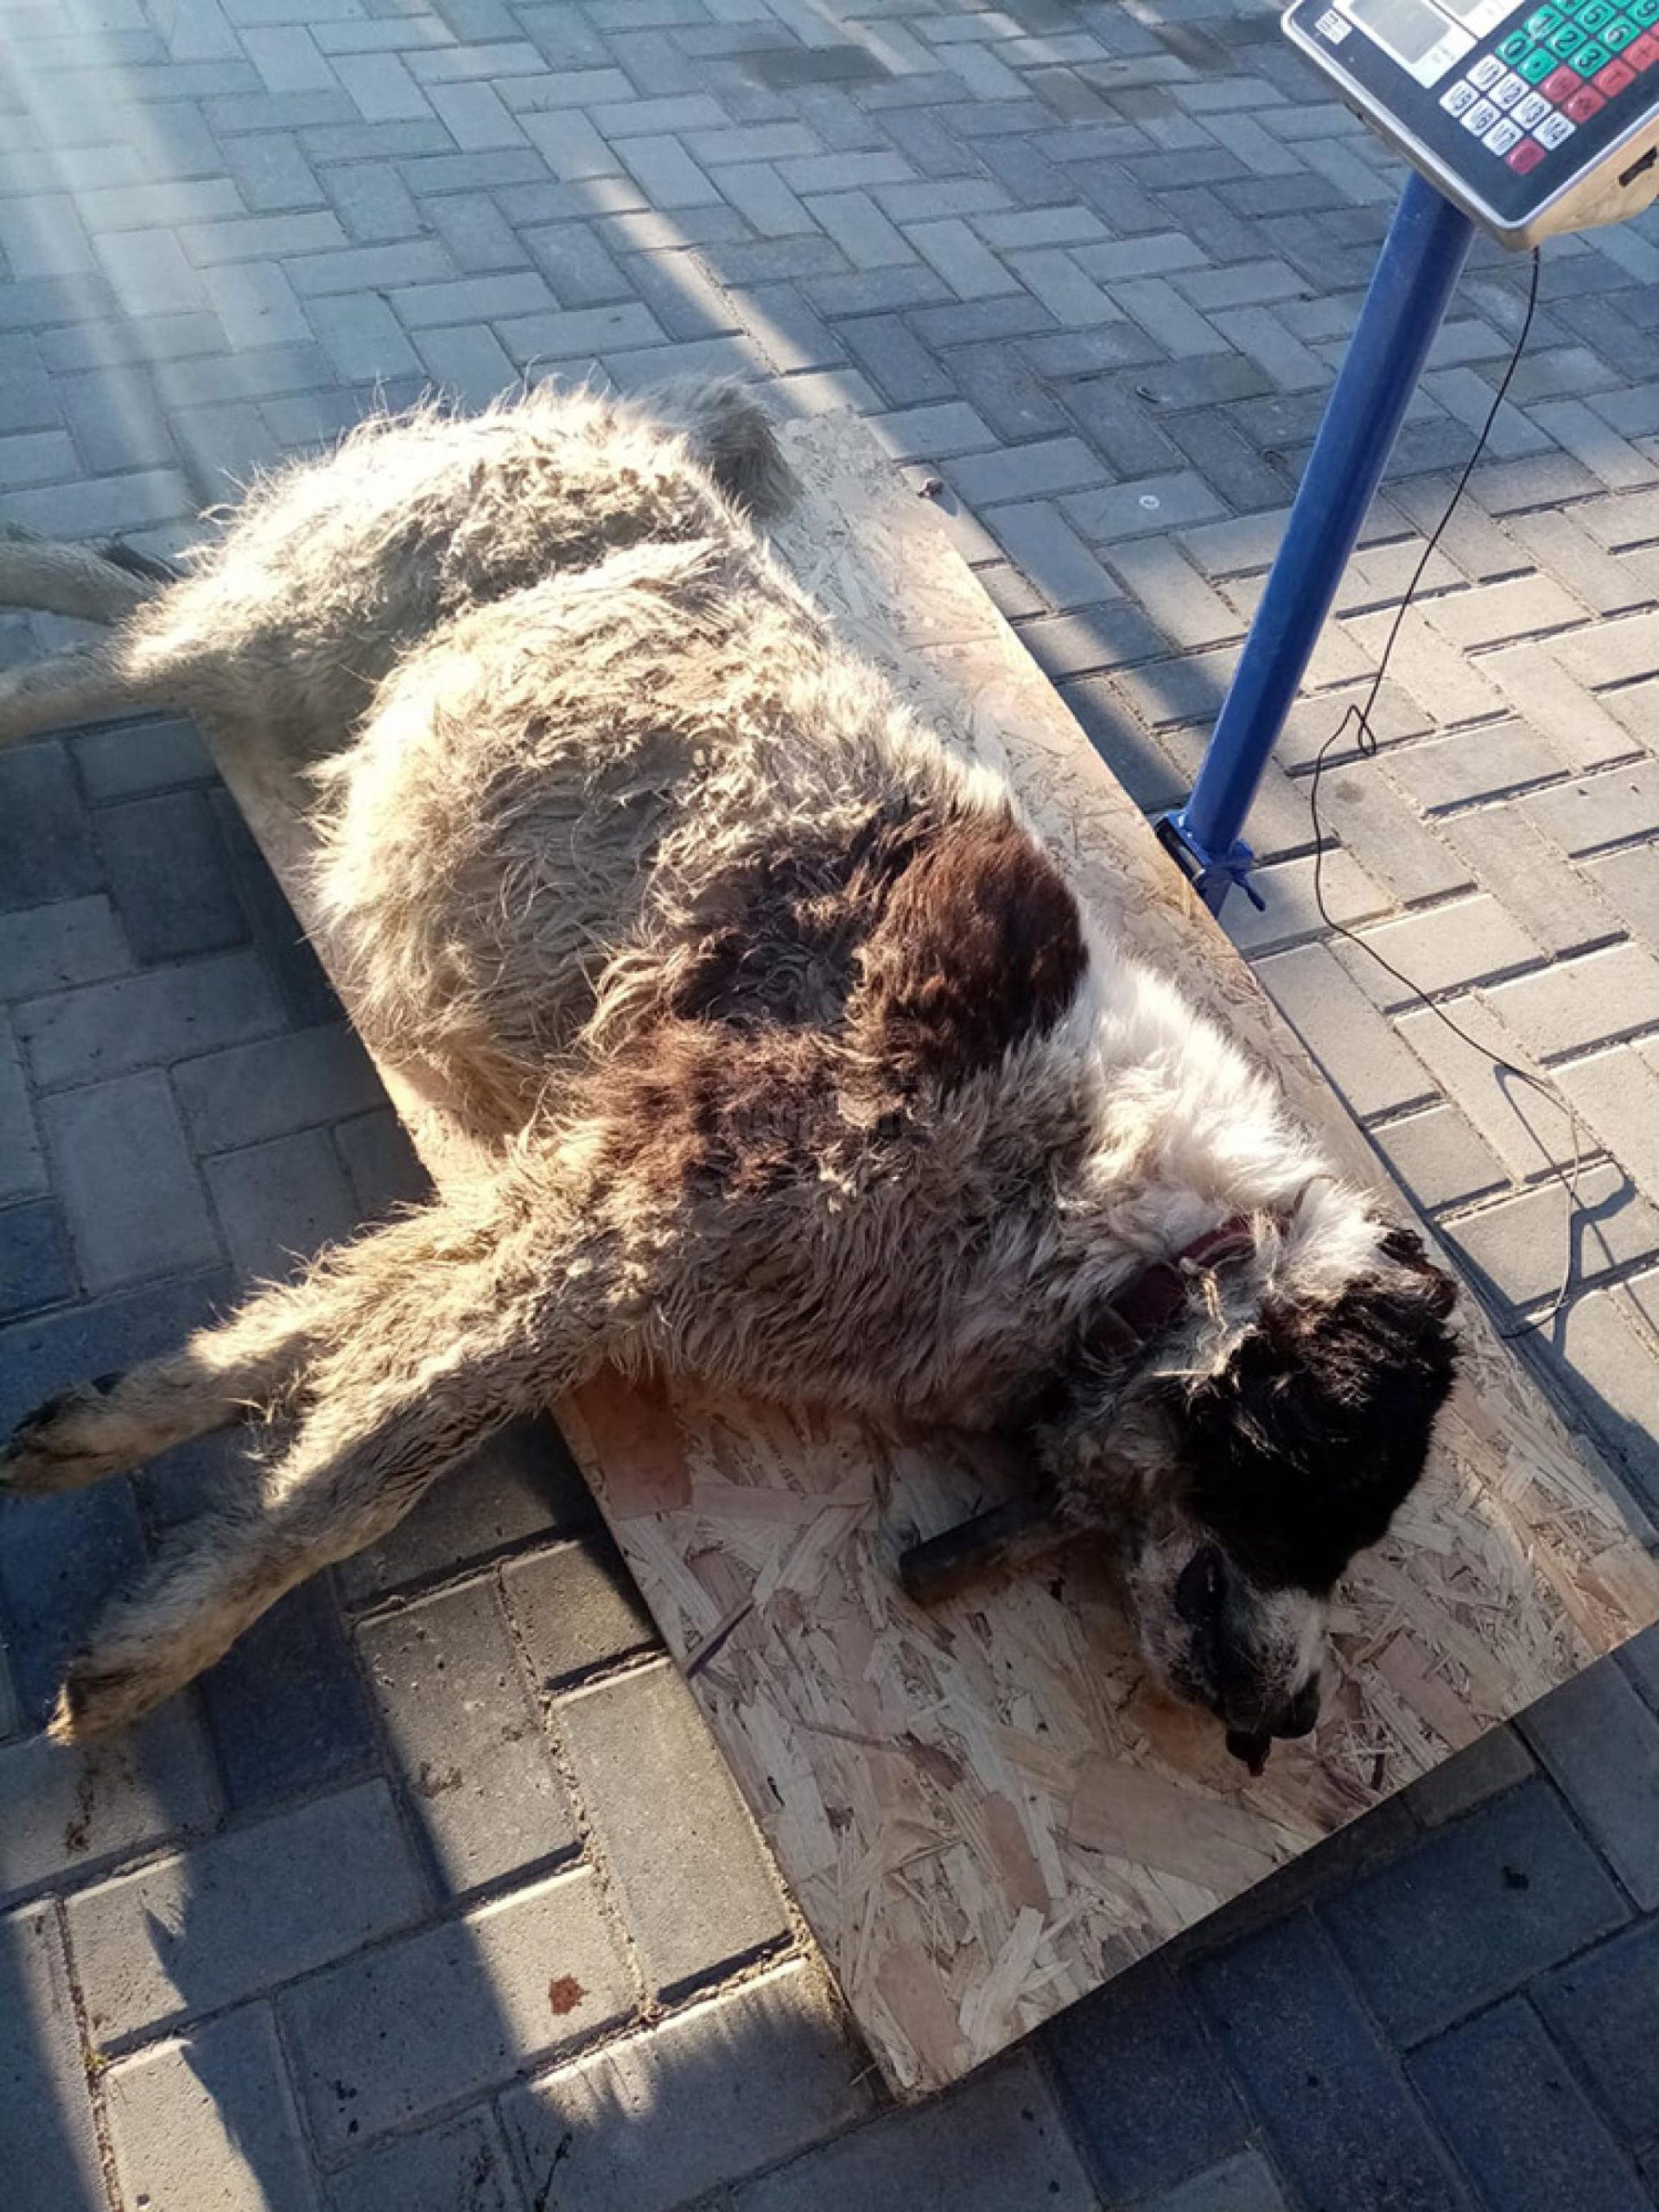  Câini ciobănești, otrăviți și împușcați pe pășuni din județul Suceava